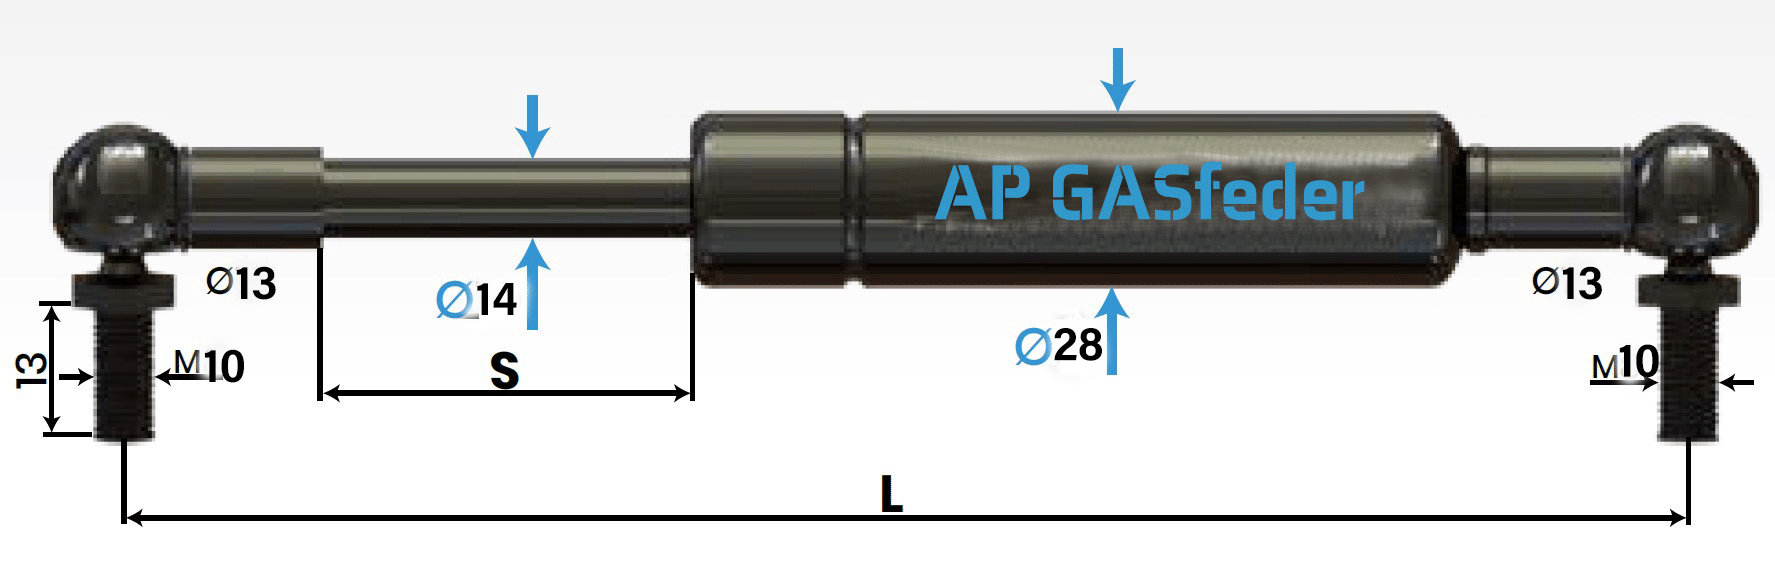 Bild von AP GASfeder 1500N, 14/28, Hub(S): 250 mm, Länge (L): 635 mm,  Alternatvie SRST.2371LH